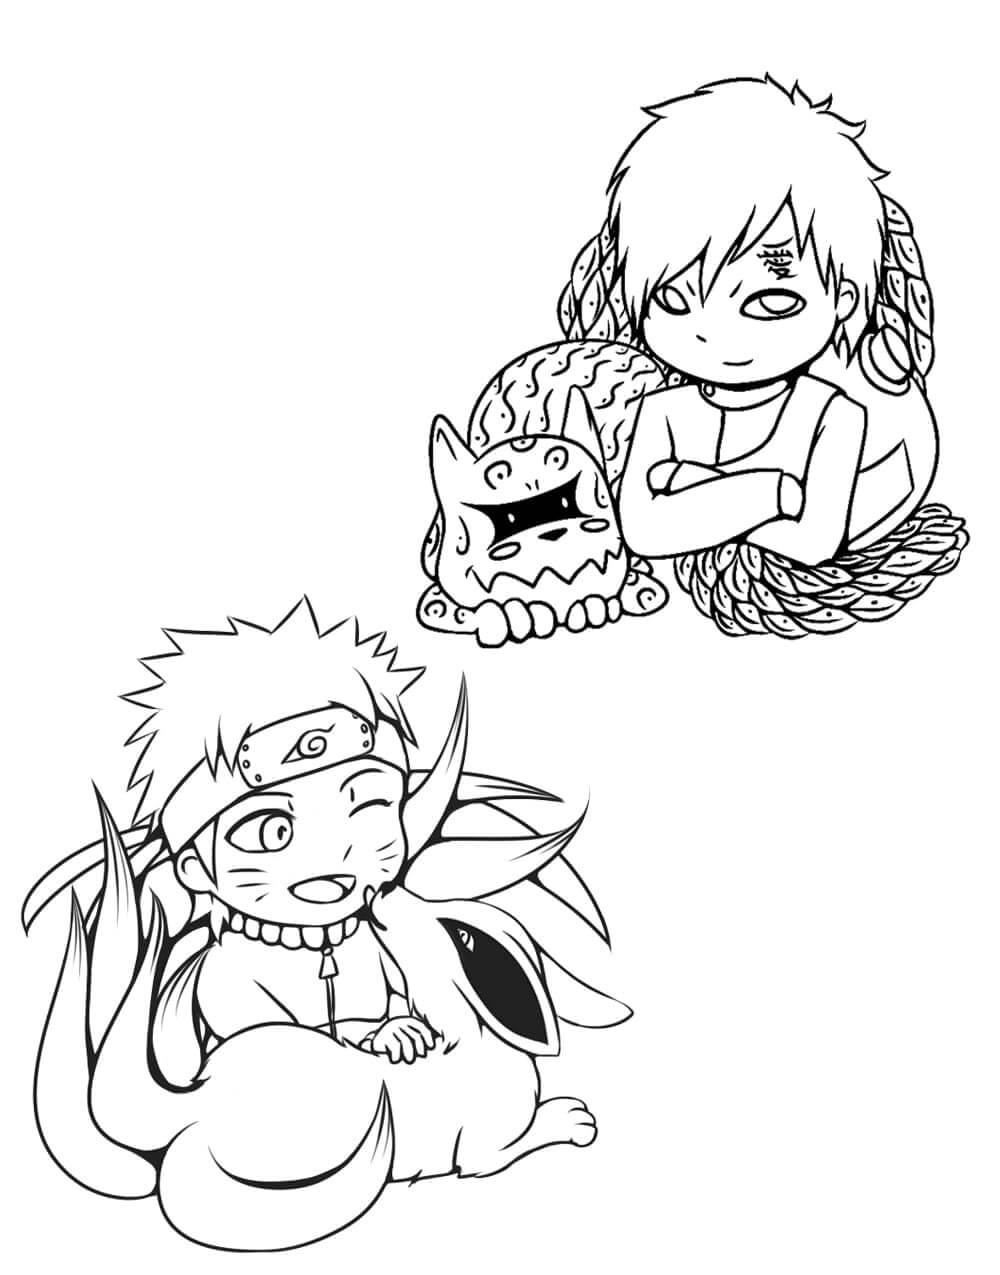 Gaara With Shukaku And Naruto With Kurama